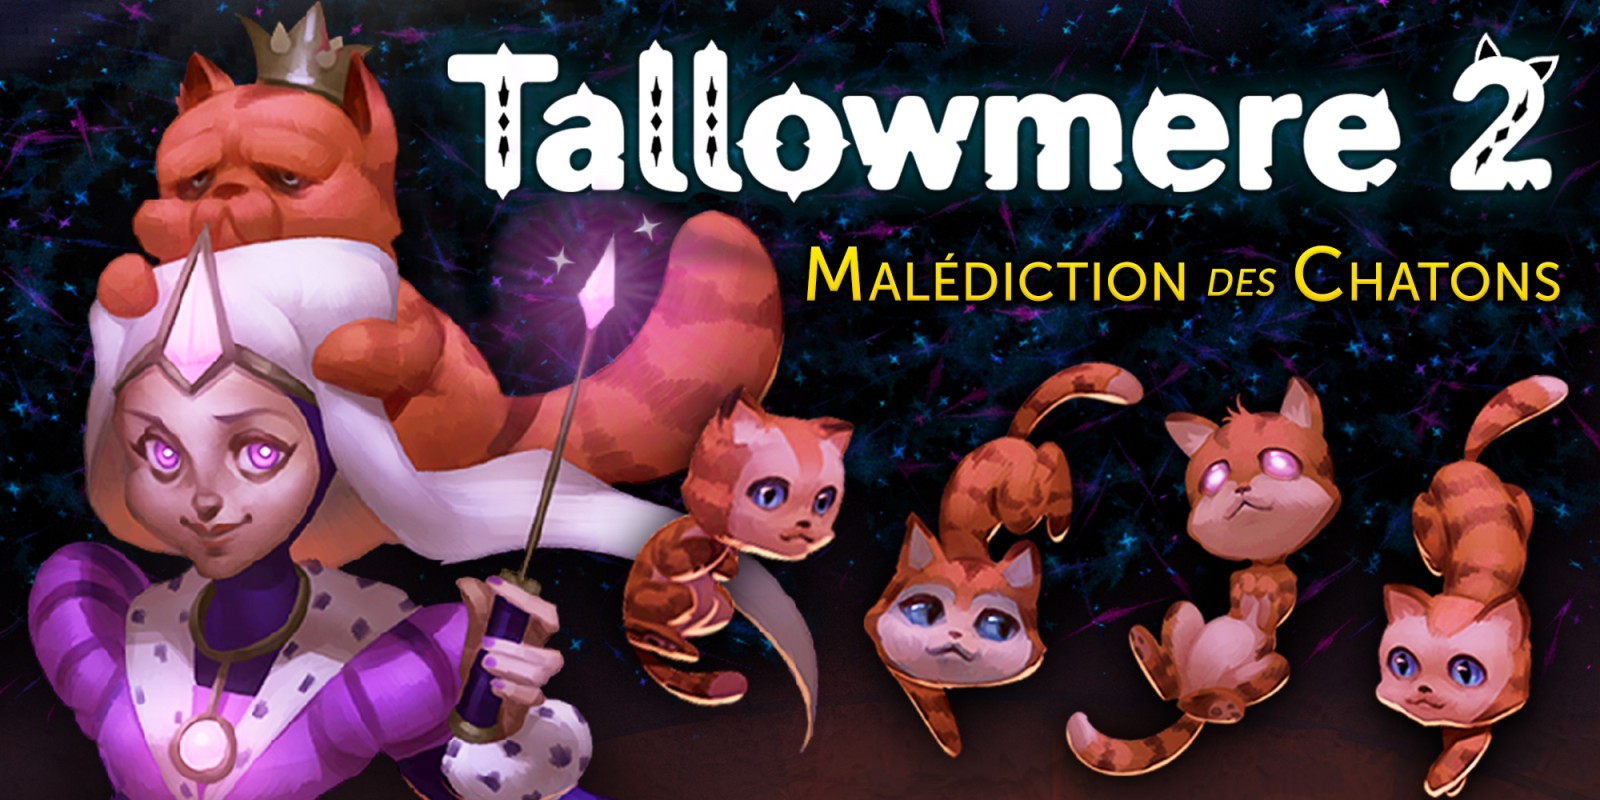 Tallowmere 2: Malédiction des Chatons